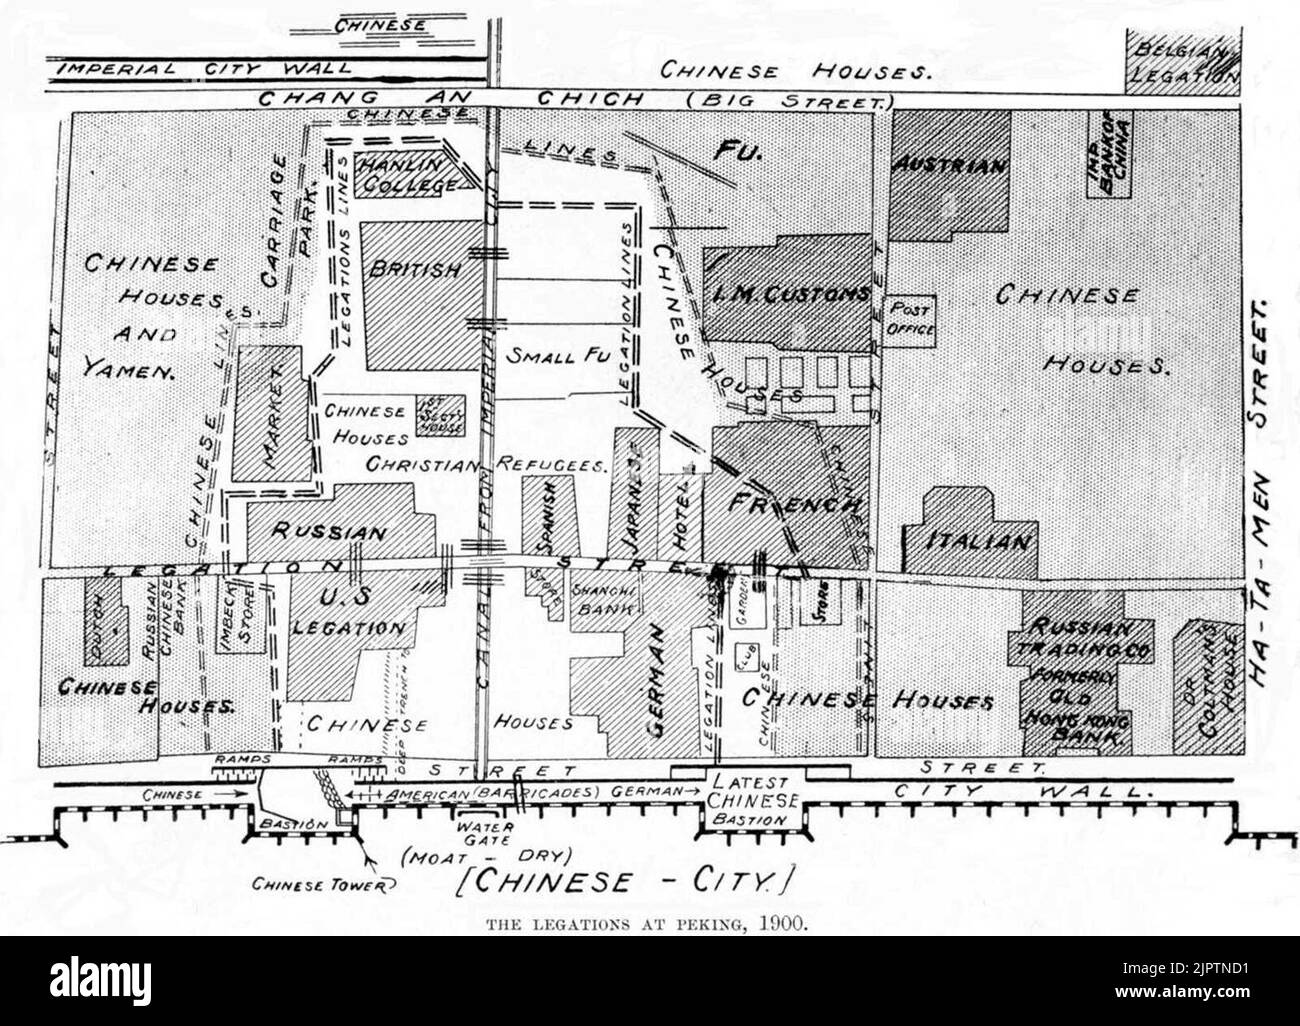 Diagrama que muestra la ubicación de las legaciones diplomáticas extranjeras en Pekín durante el sitio Boxer, 1900 Foto de stock